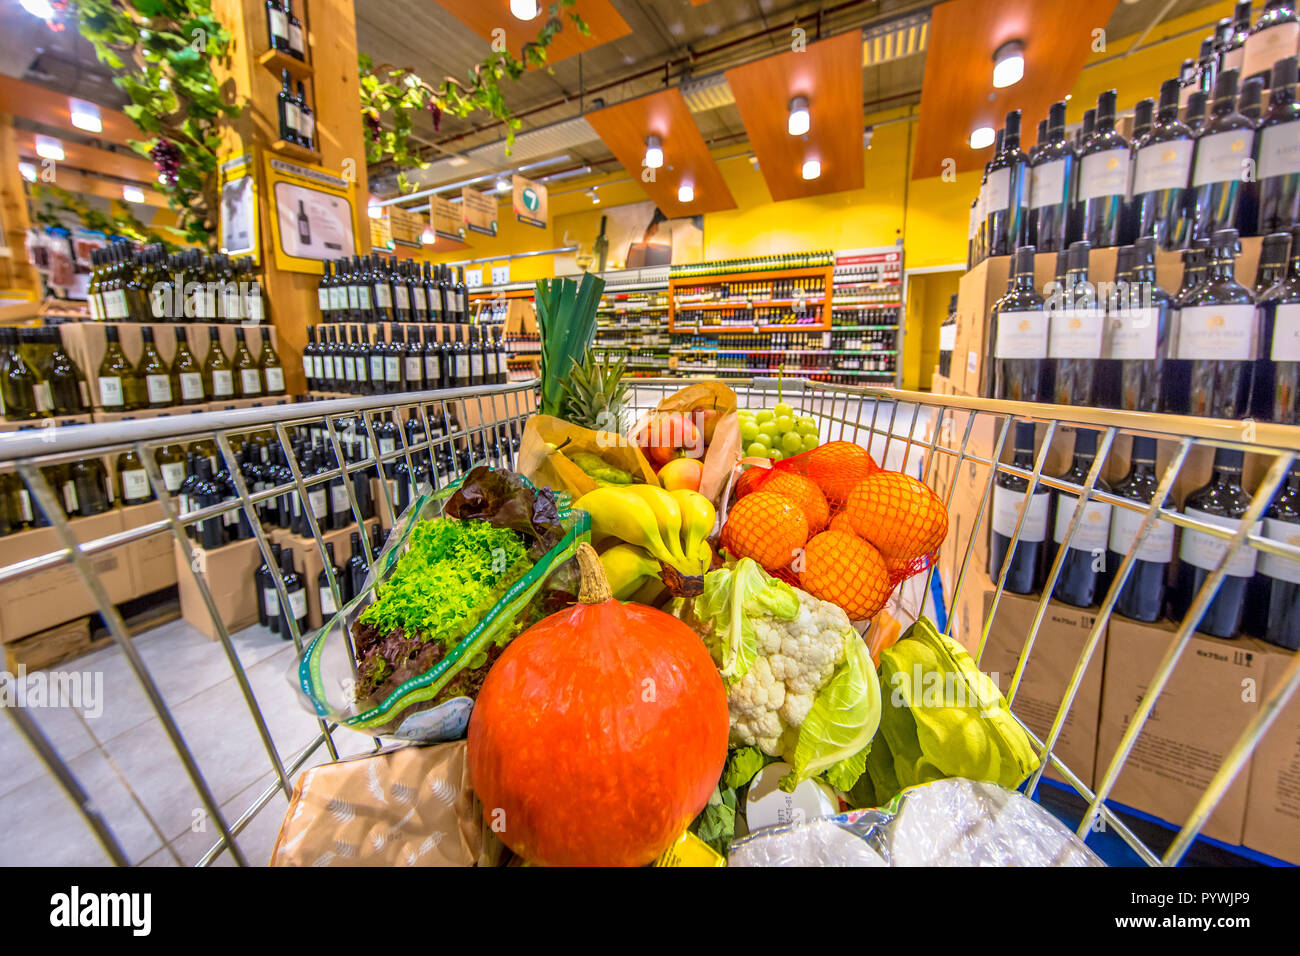 Lebensmittelgeschäft Warenkorb im Supermarkt, mit frischen und gesunden Lebensmitteln auf dem Wein und Alkohol Abschnitt ausgefüllt als Konzept für low carb Low cholestoro Stockfoto